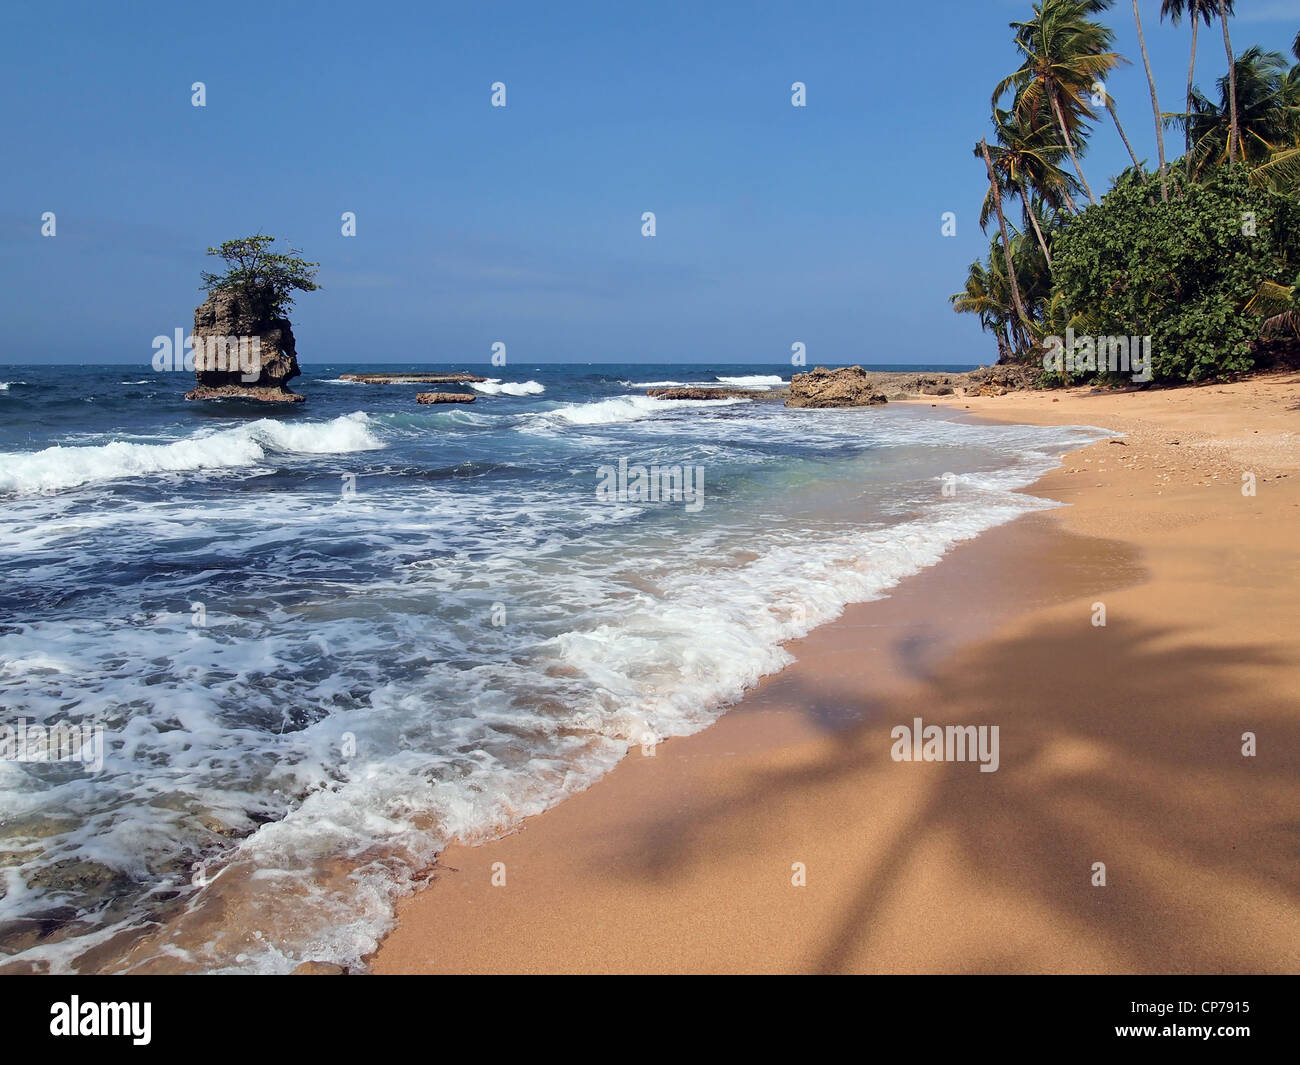 Spiaggia caraibica con silhouette di Palm tree sulla sabbia e un isolotto roccioso, Costa Rica, Manzanillo Foto Stock